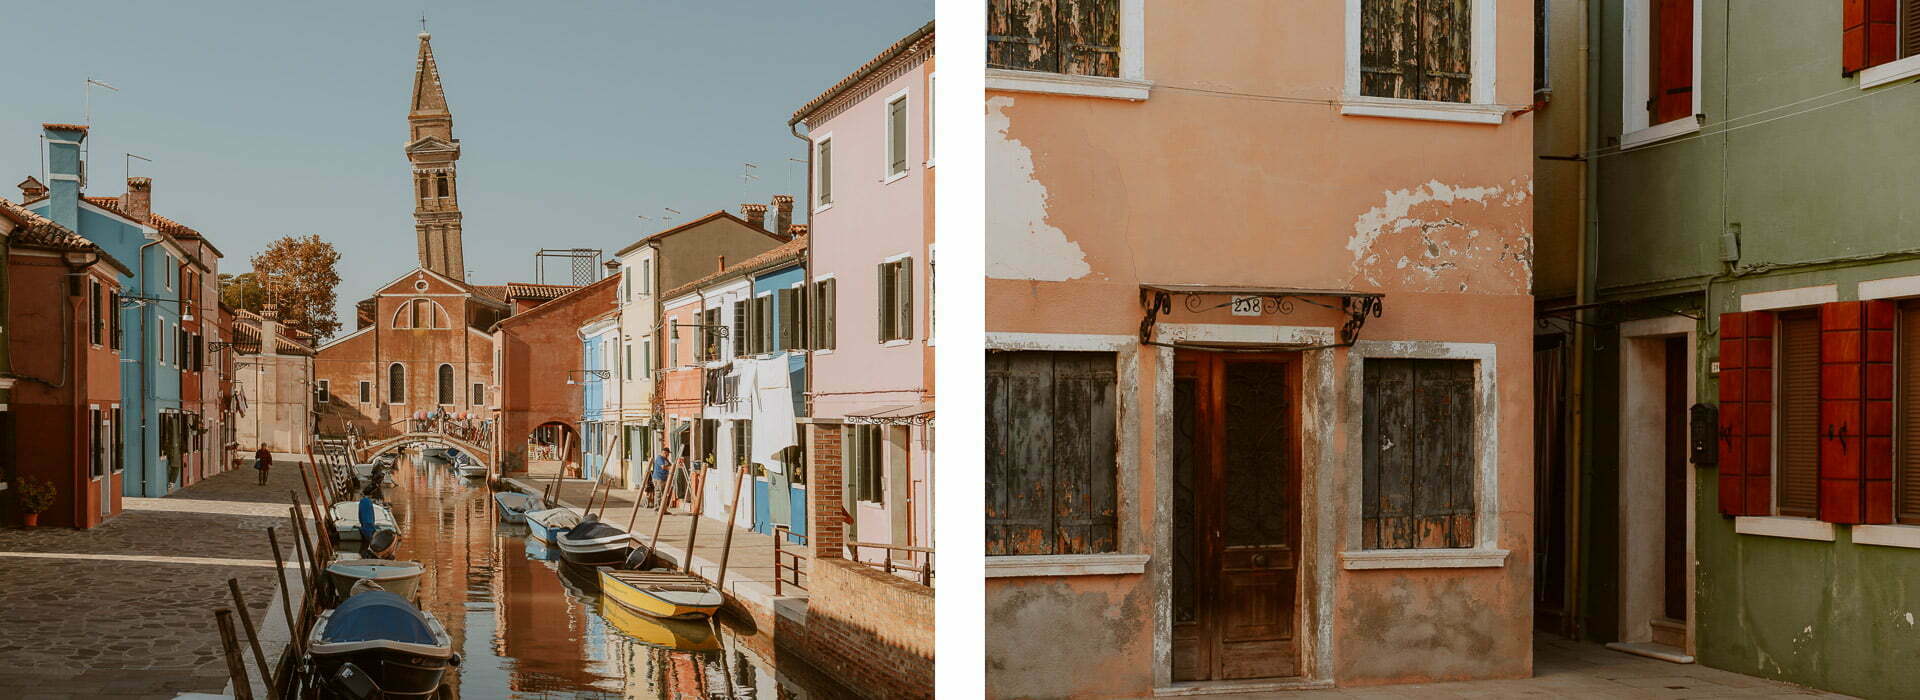 Burano Włochy kolorowe domki